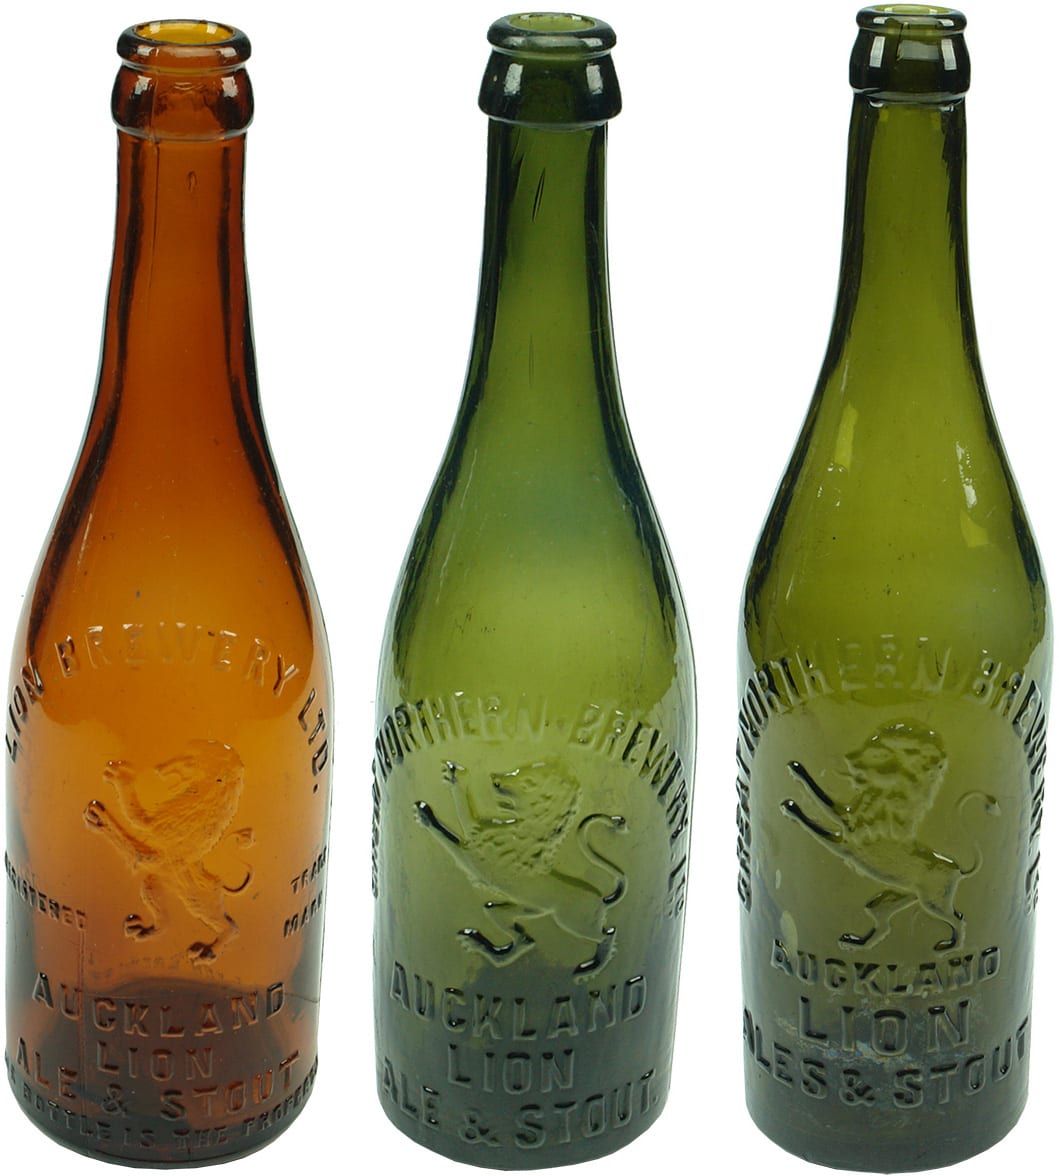 New Zealand Crown Seal Beer Bottles